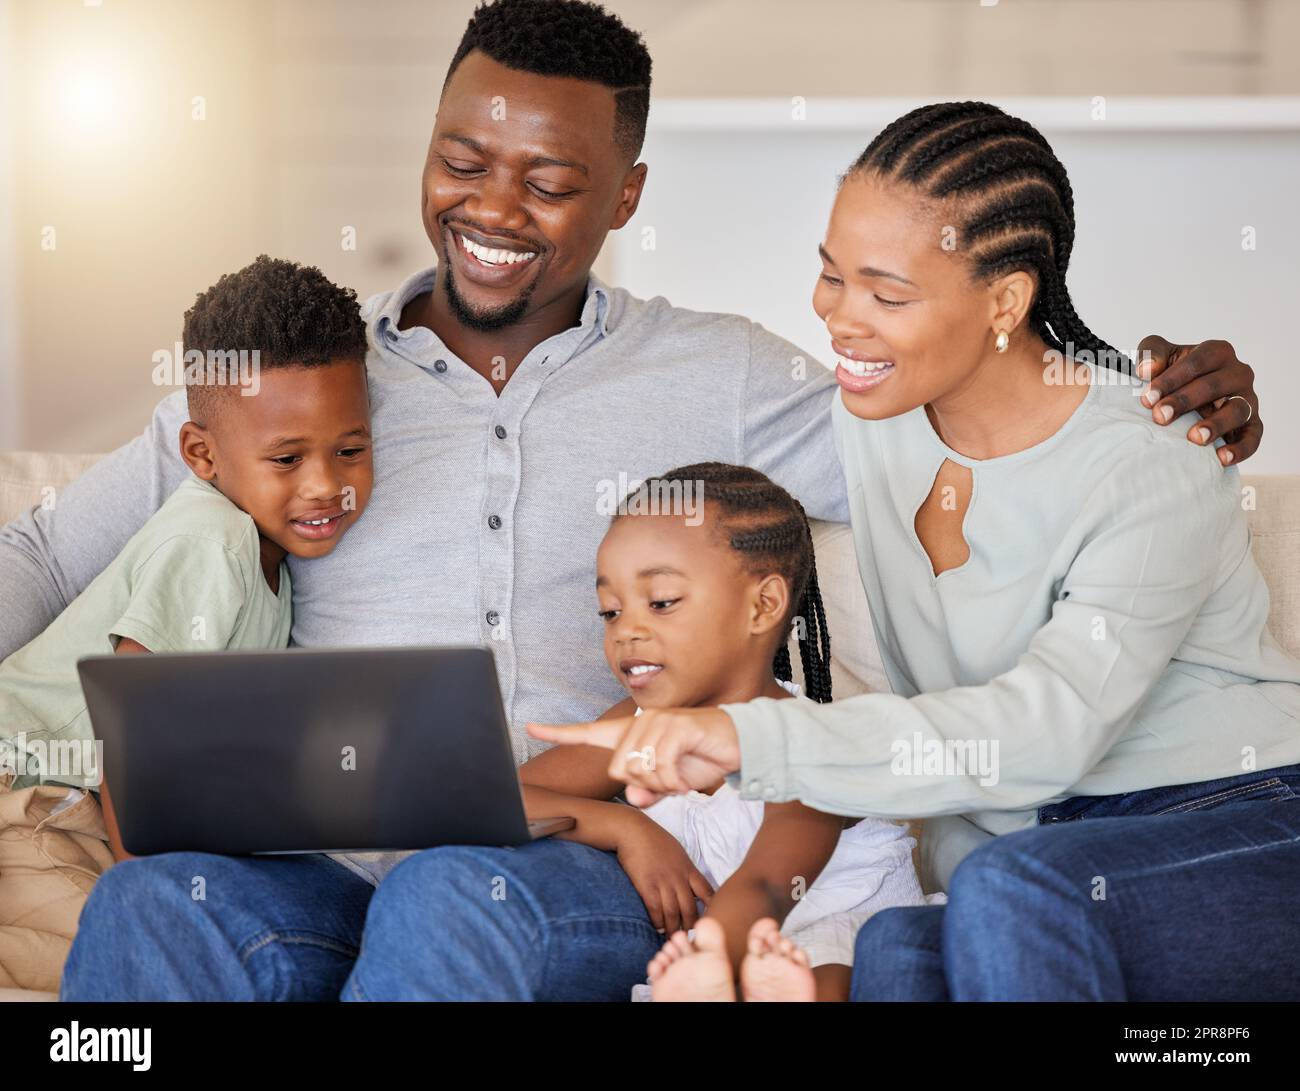 Wir lieben diesen Film. Eine junge afrikanische Familie schaut sich zusammen Filme auf einem Laptop an. Stockfoto